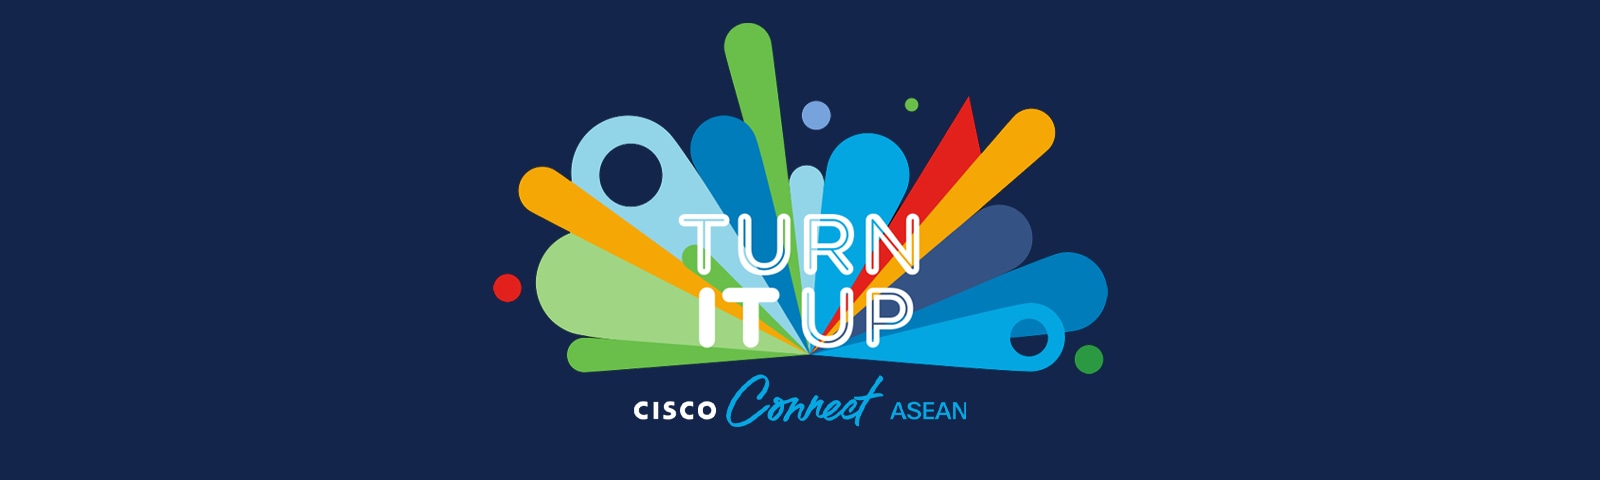 Cisco Connect ASEAN 2021 